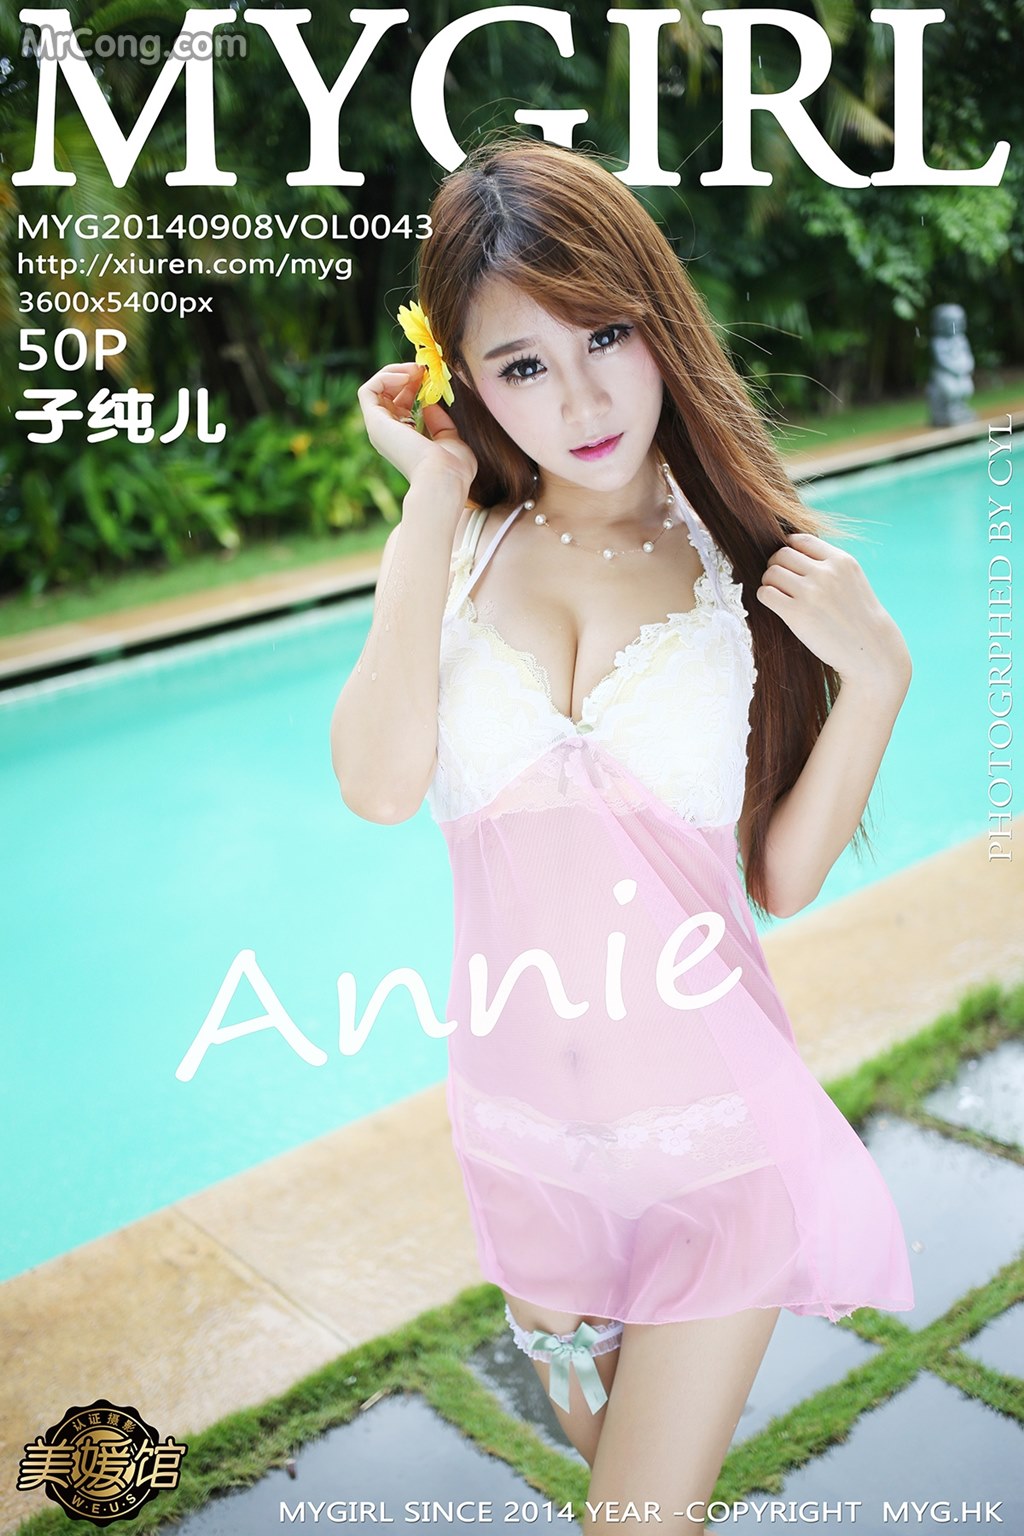 MyGirl Vol.043: Model Annie (子 纯 儿) (51 photos) photo 1-0